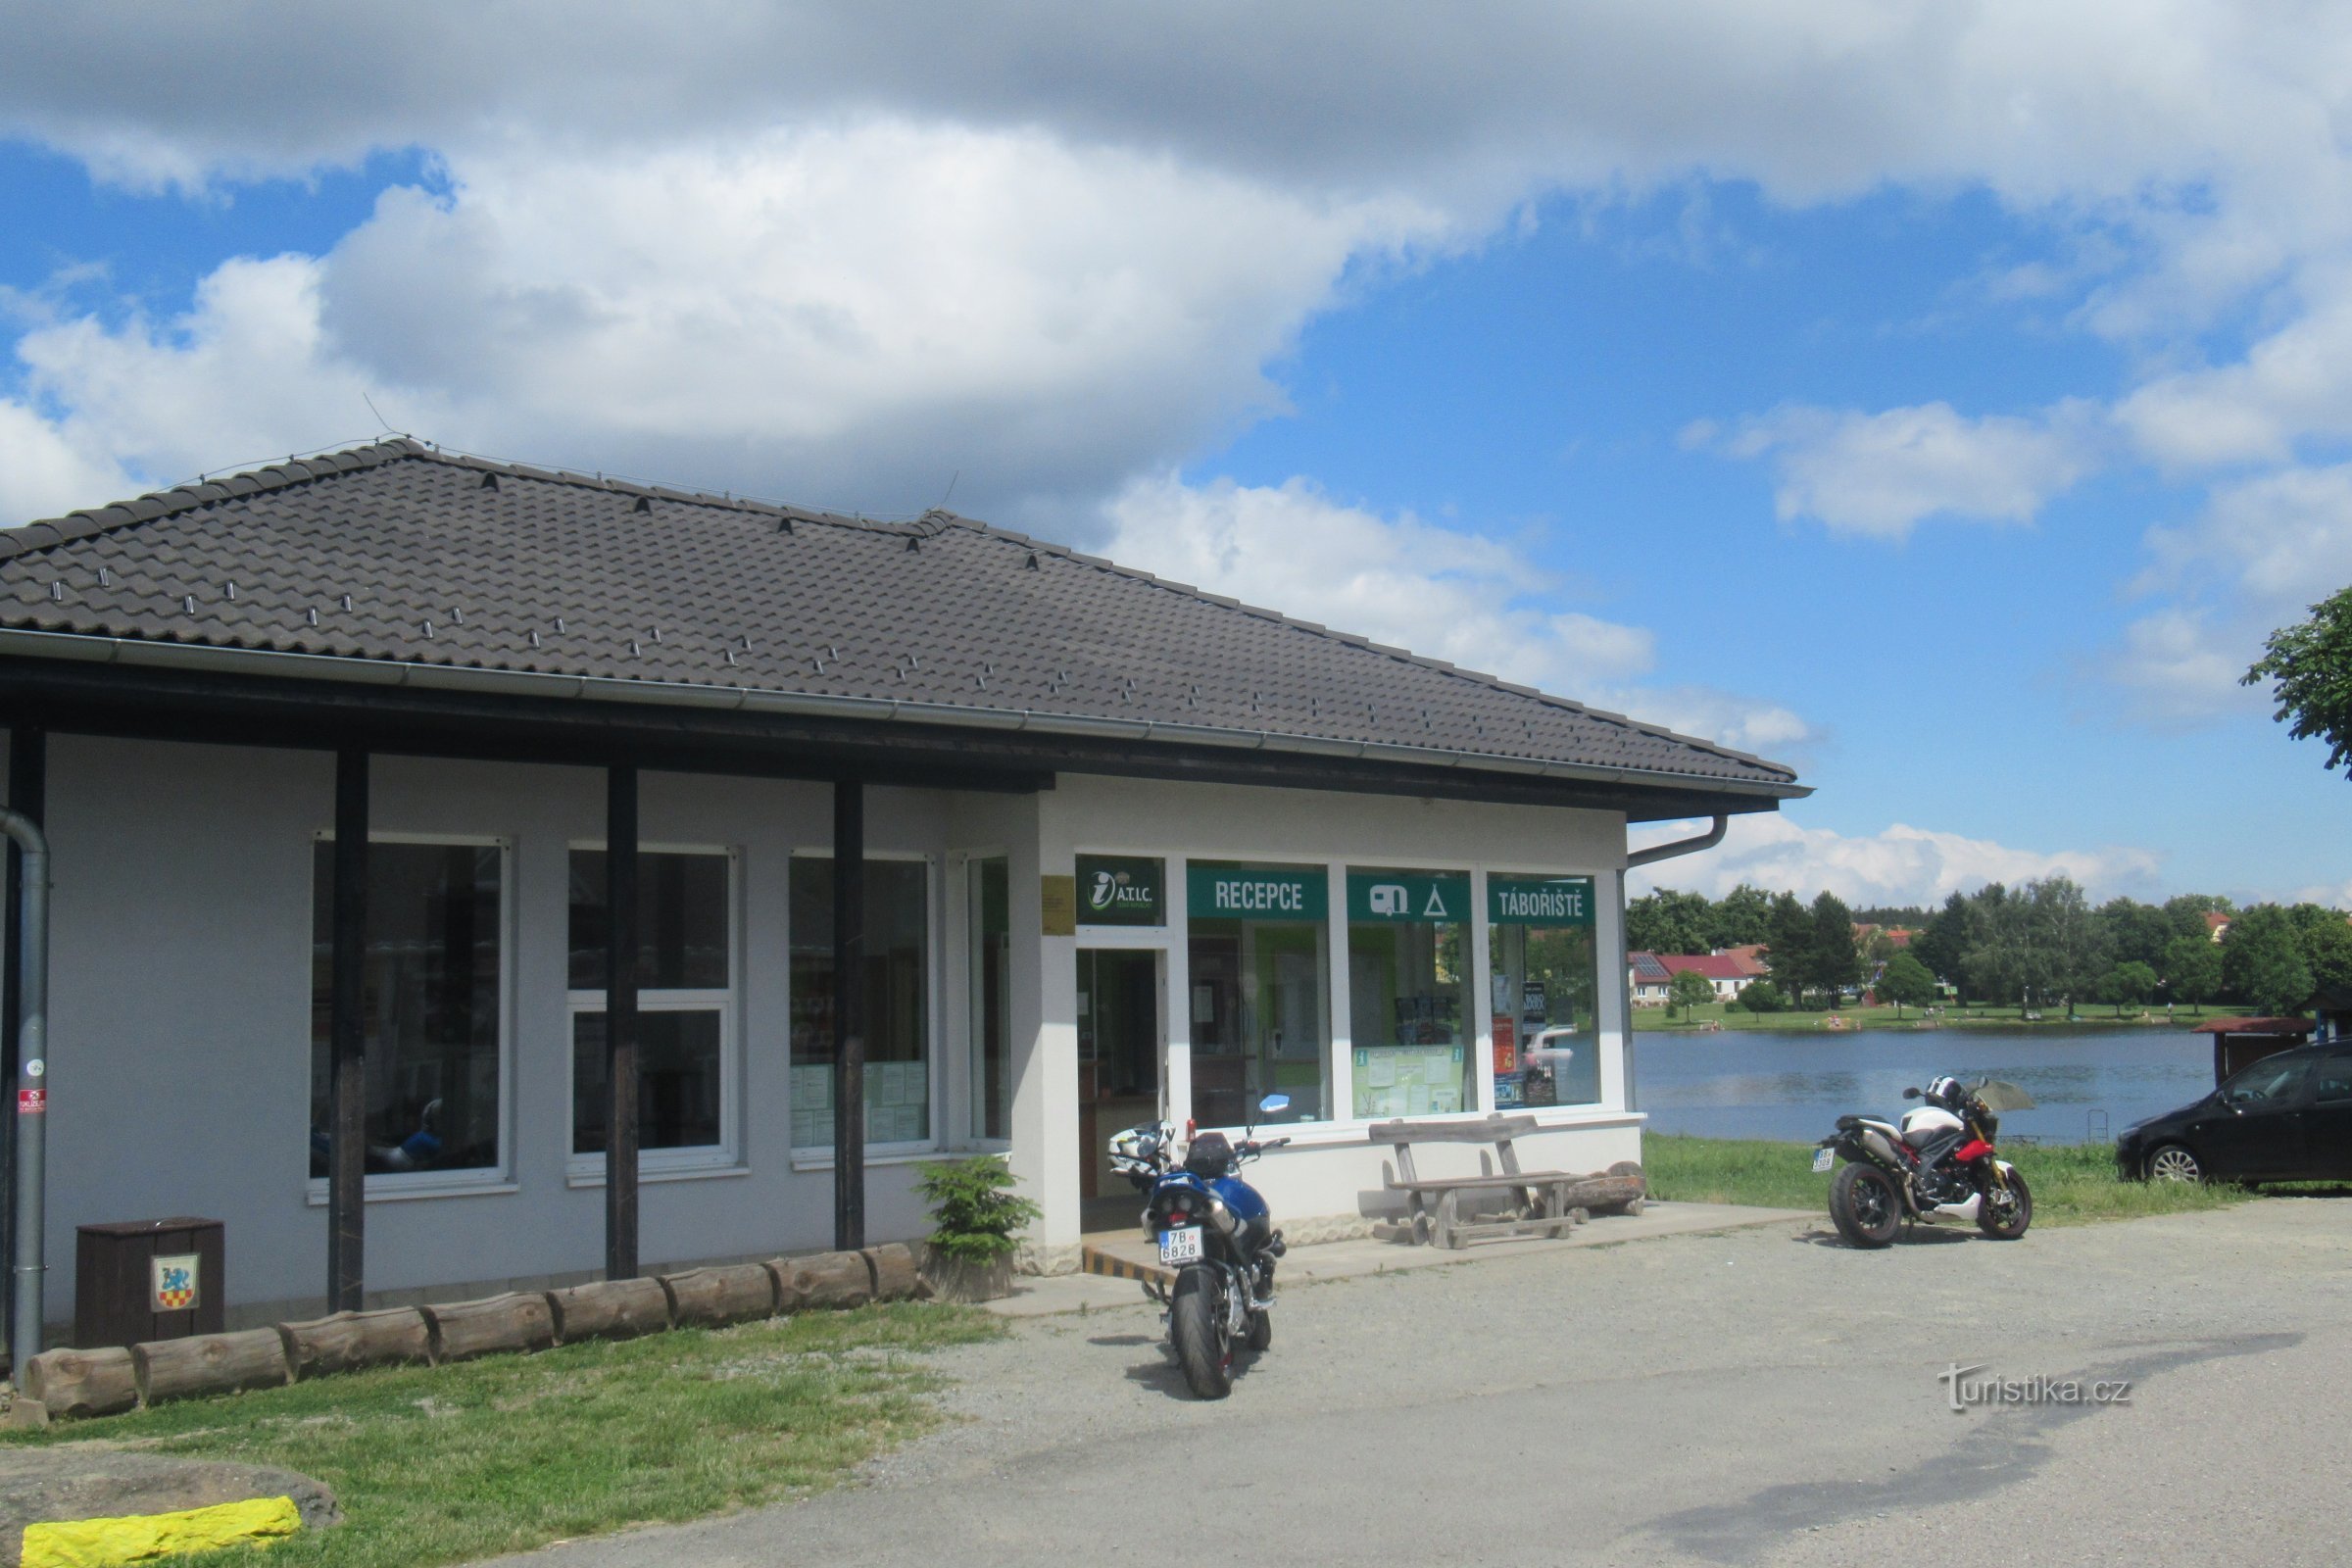 Suchý - Touristisches Informationszentrum